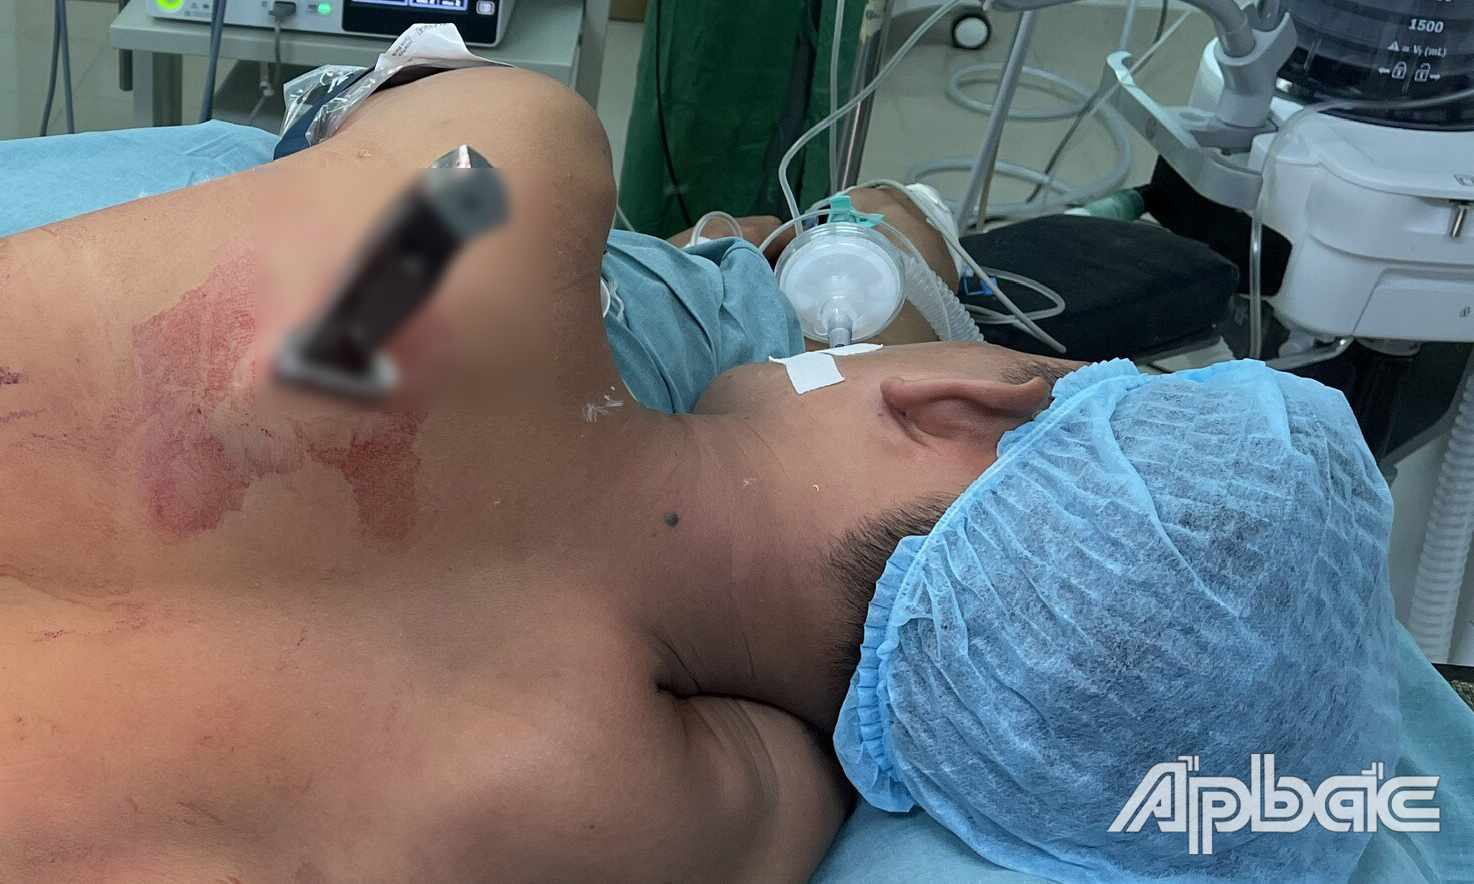 Kiểng được đưa đến bệnh viện cấp cứu. Ảnh: Bệnh viện Đa khoa Trung tâm tỉnh Tiền Giang.